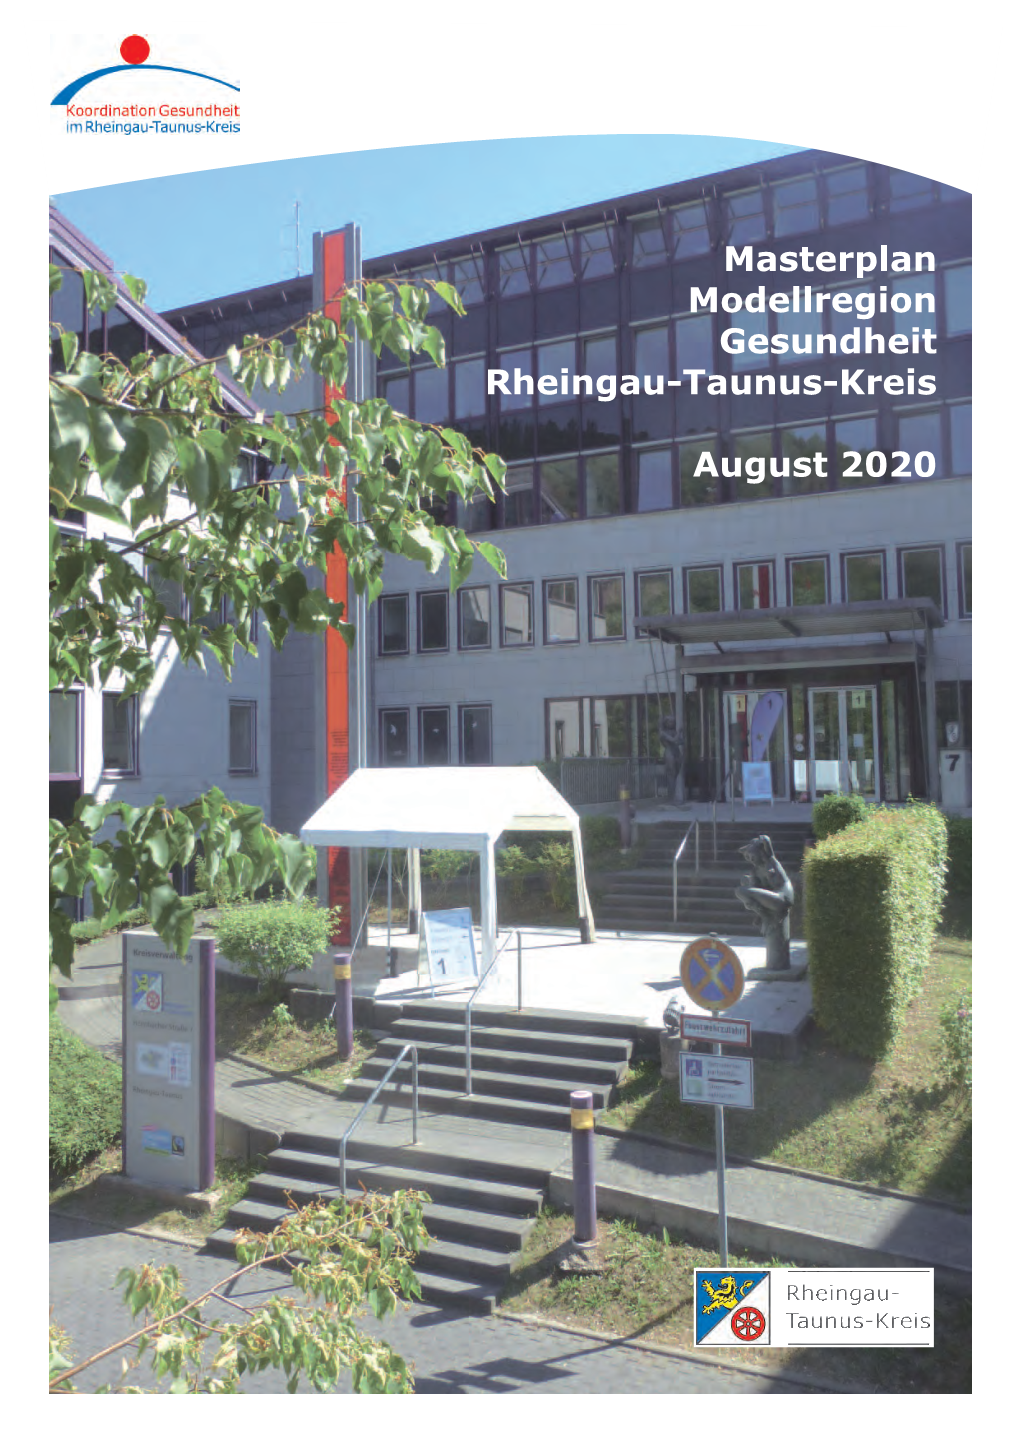 Masterplan Modellregion Gesundheit Rheingau-Taunus-Kreis August 2020